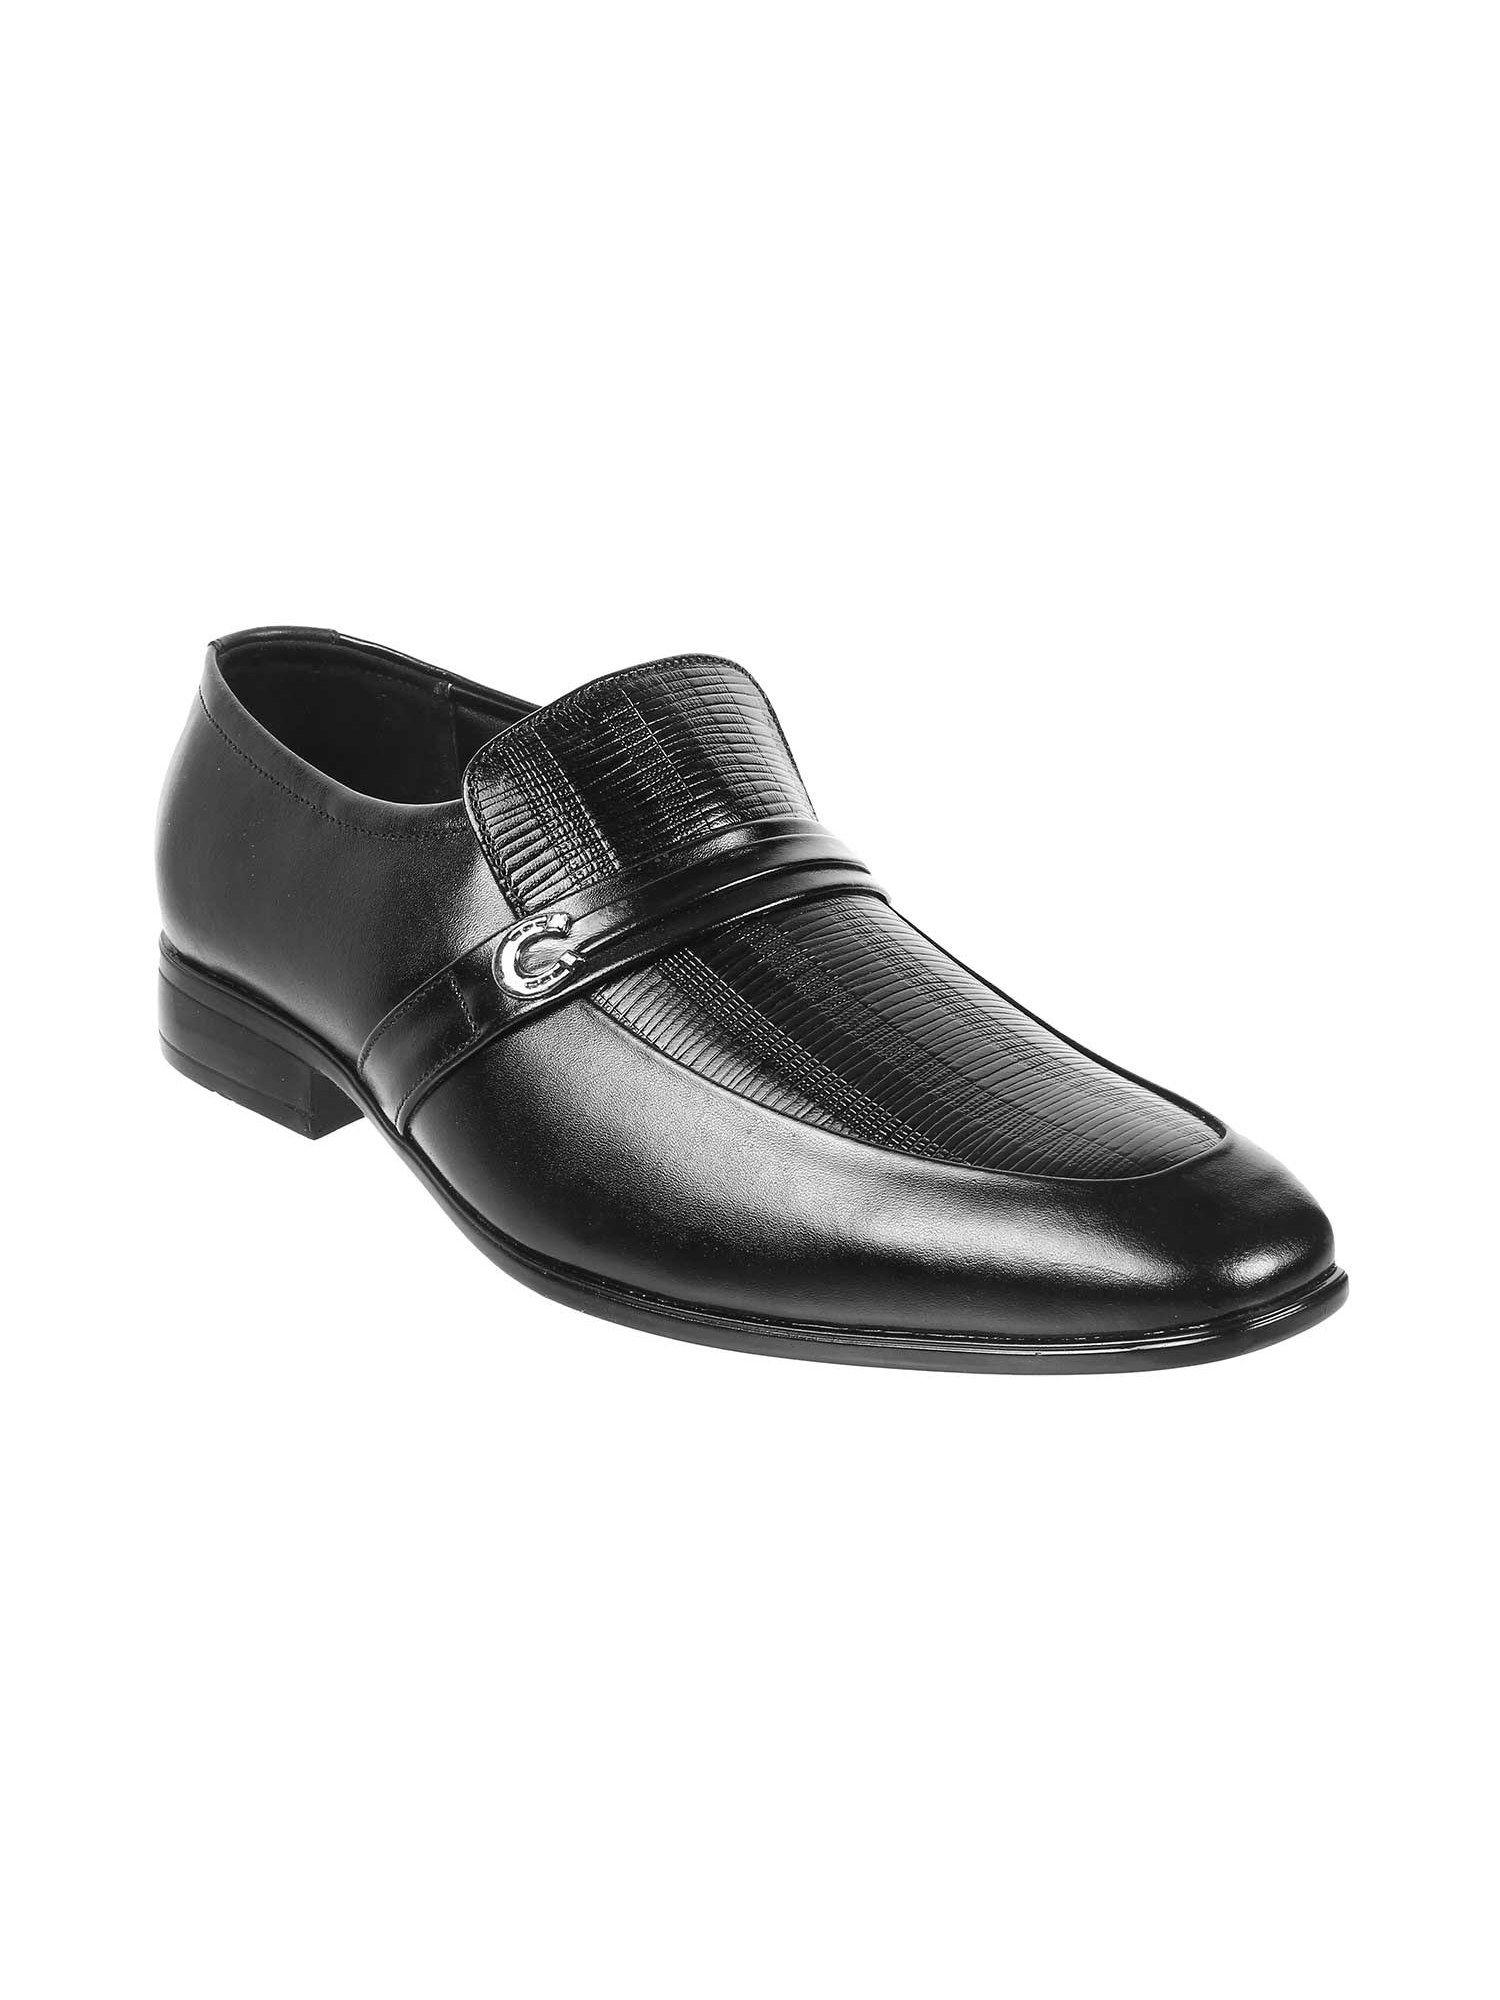 men black leather formal moccasins shoes